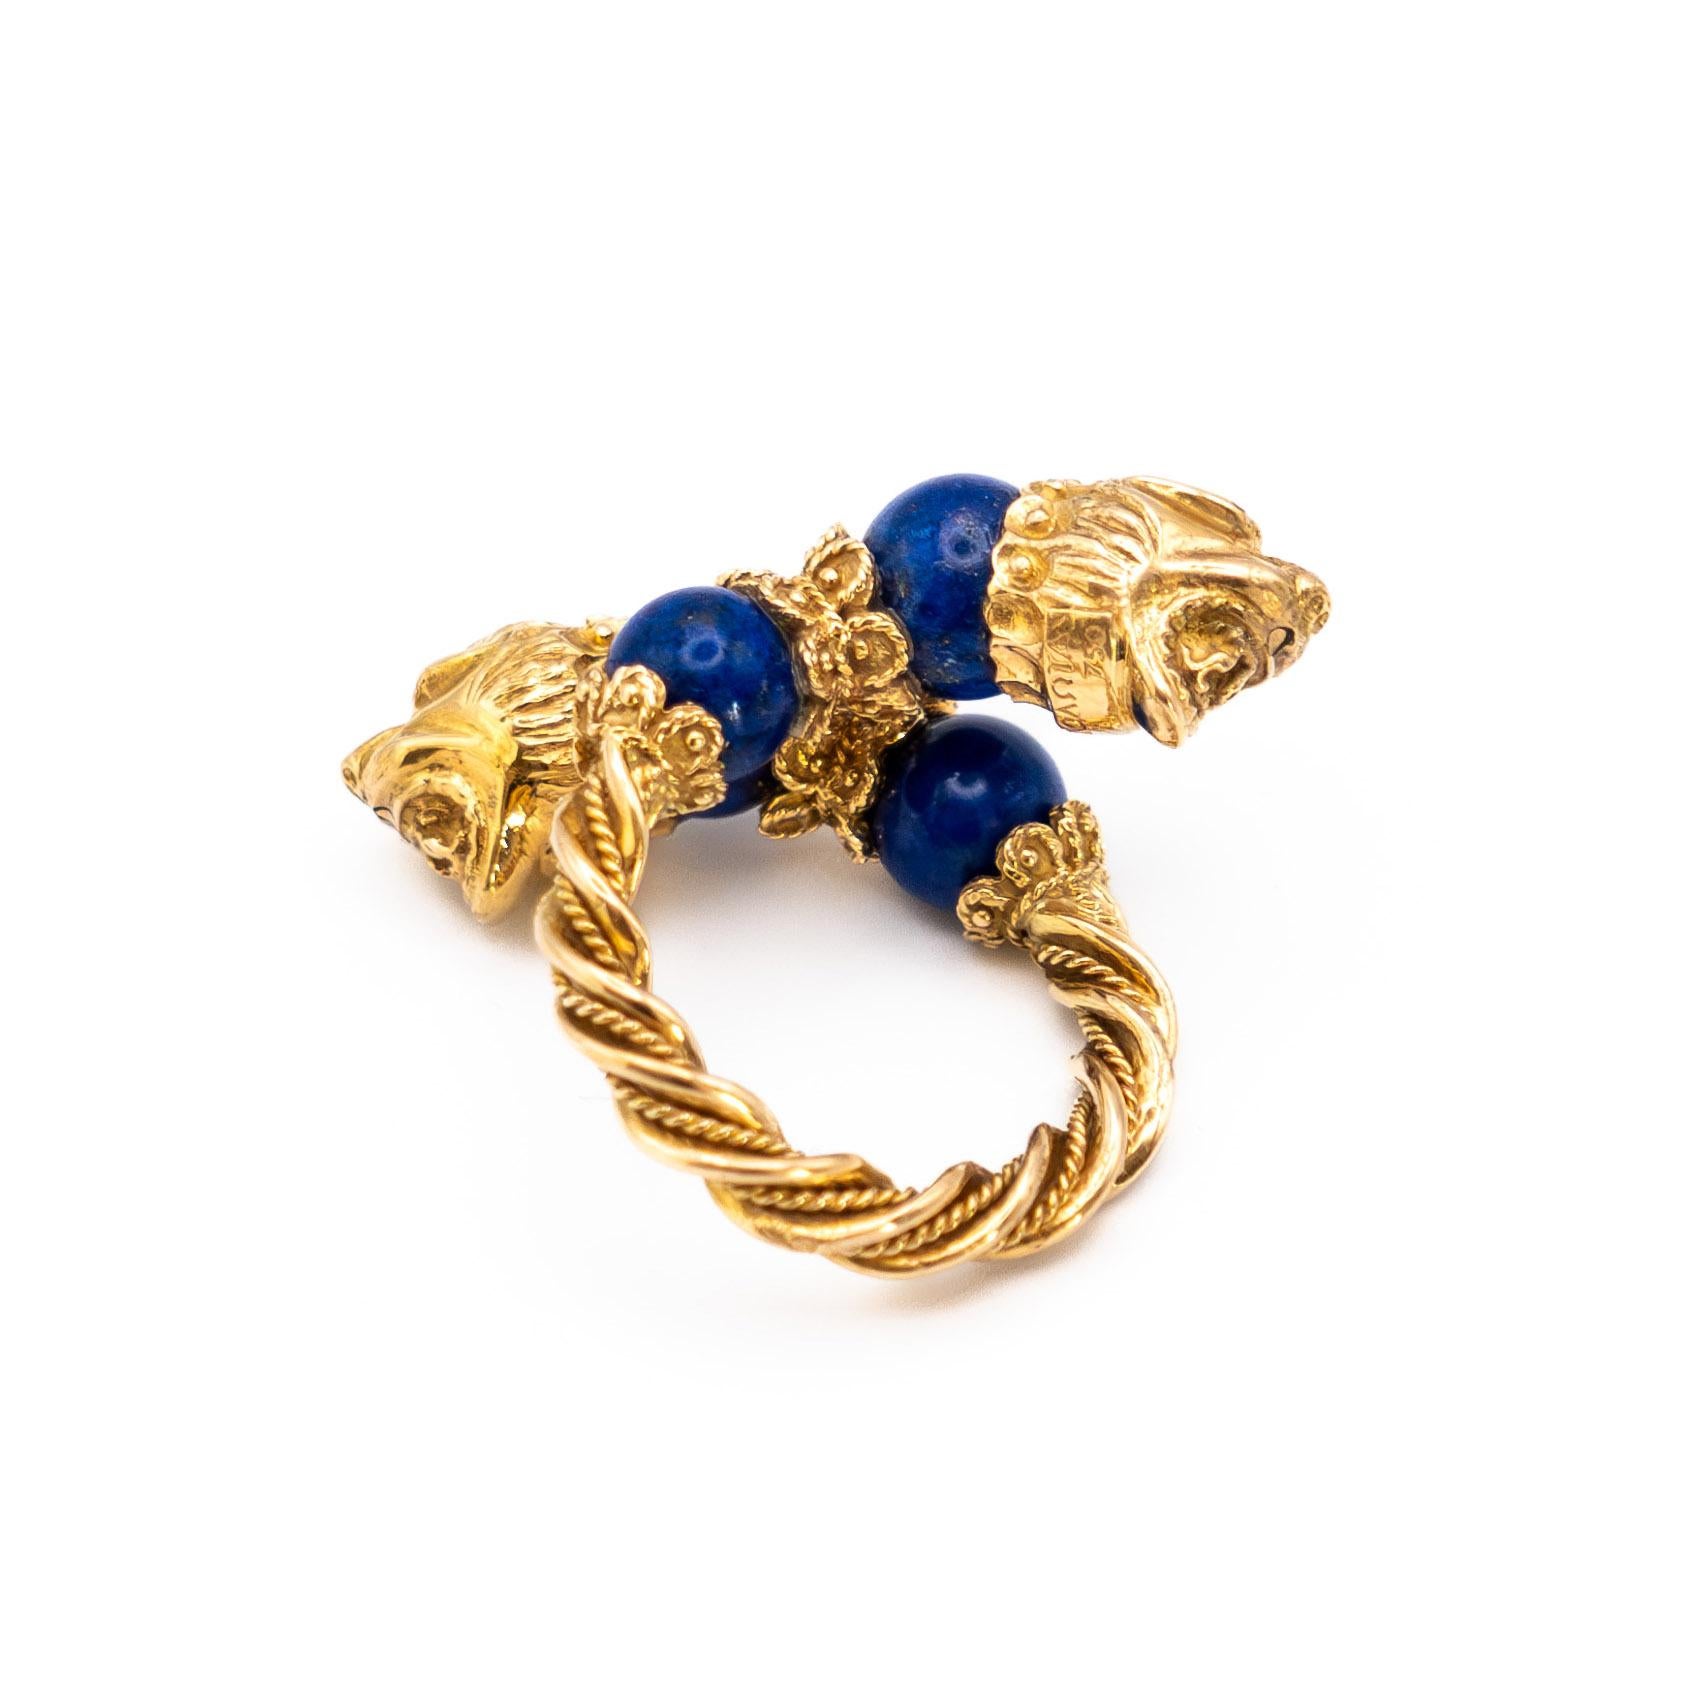 Une bague lion à deux têtes en or 18K ornée de  4 perles de Lapis Lazuli
Signé Zolotas - Circa 1970
Taille de l'anneau : 52 (taille française)
Poids : 17,89 g

L'entreprise grecque Zolotas a été fondée en 1895 à Athènes, au pied de l'Acropole, par